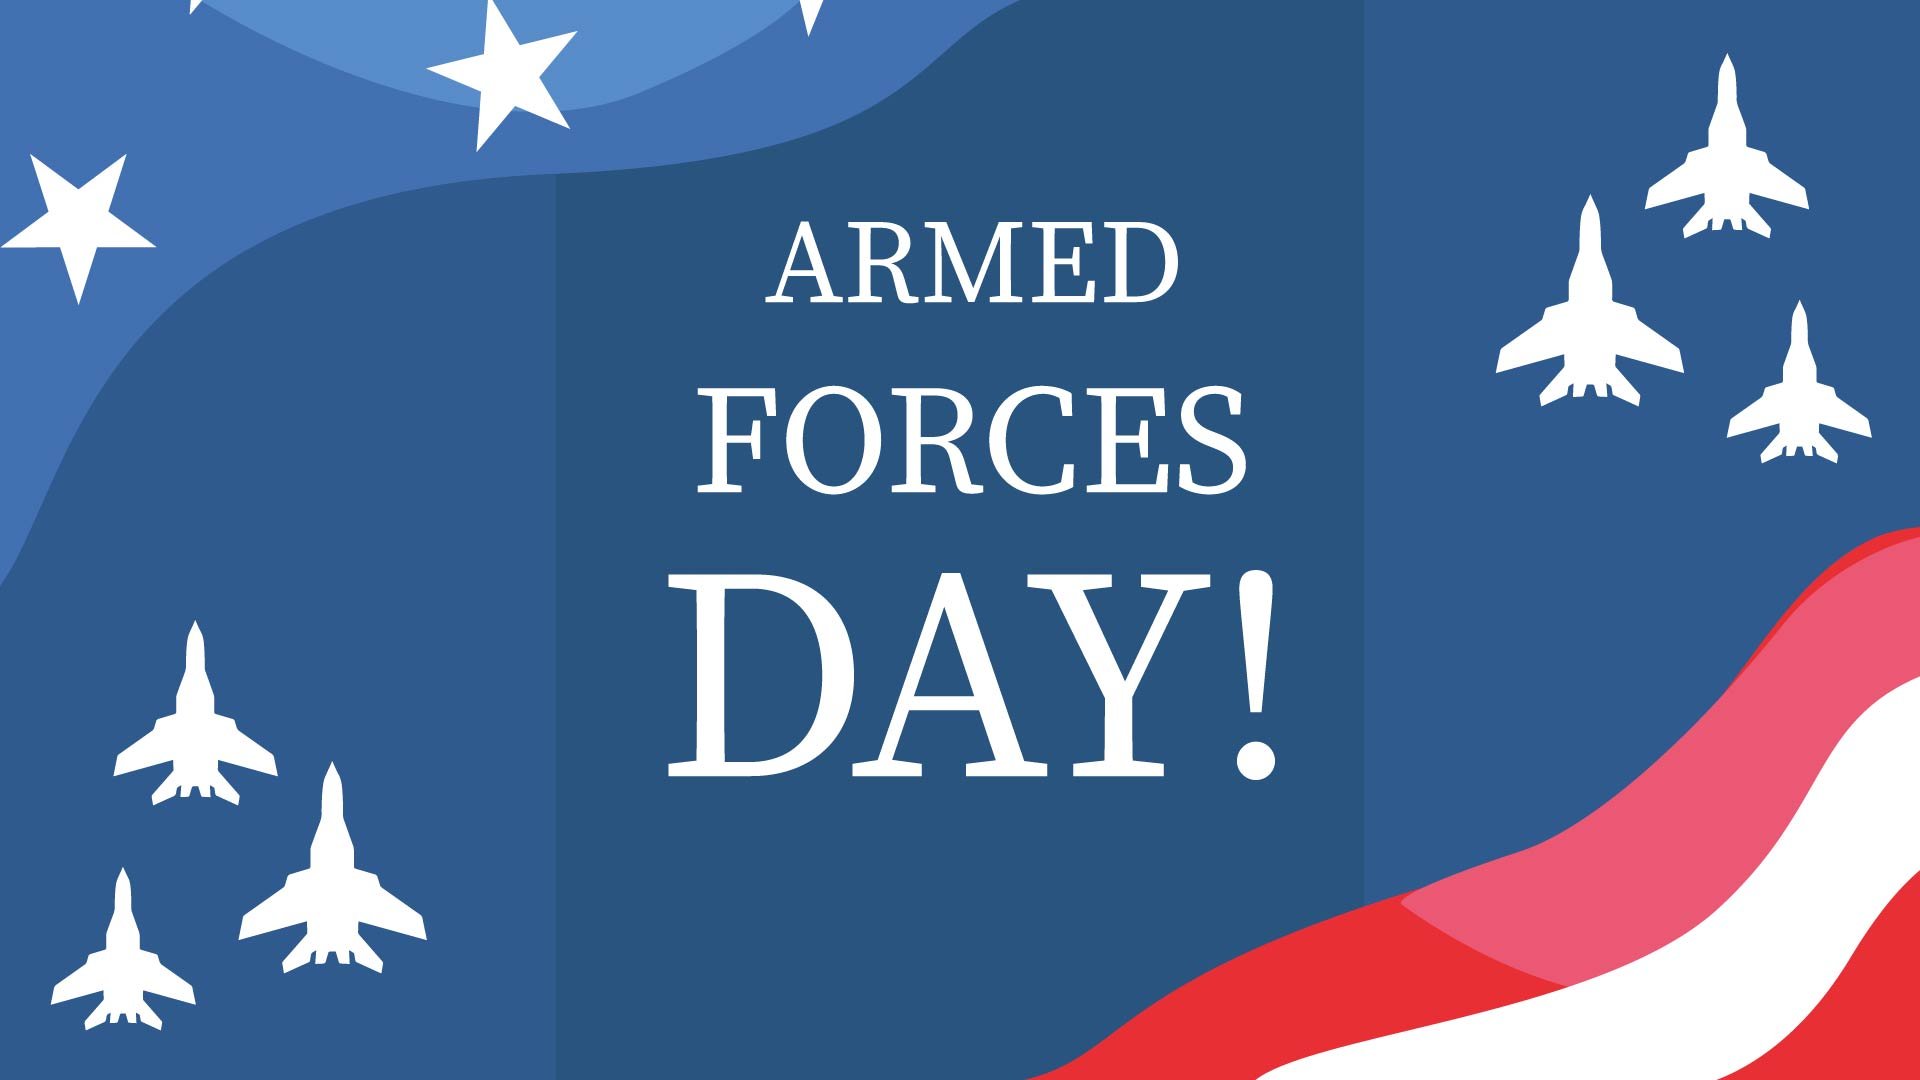 Free Armed Forces Day Design Background in PDF, Illustrator, PSD, EPS, SVG, JPG, PNG